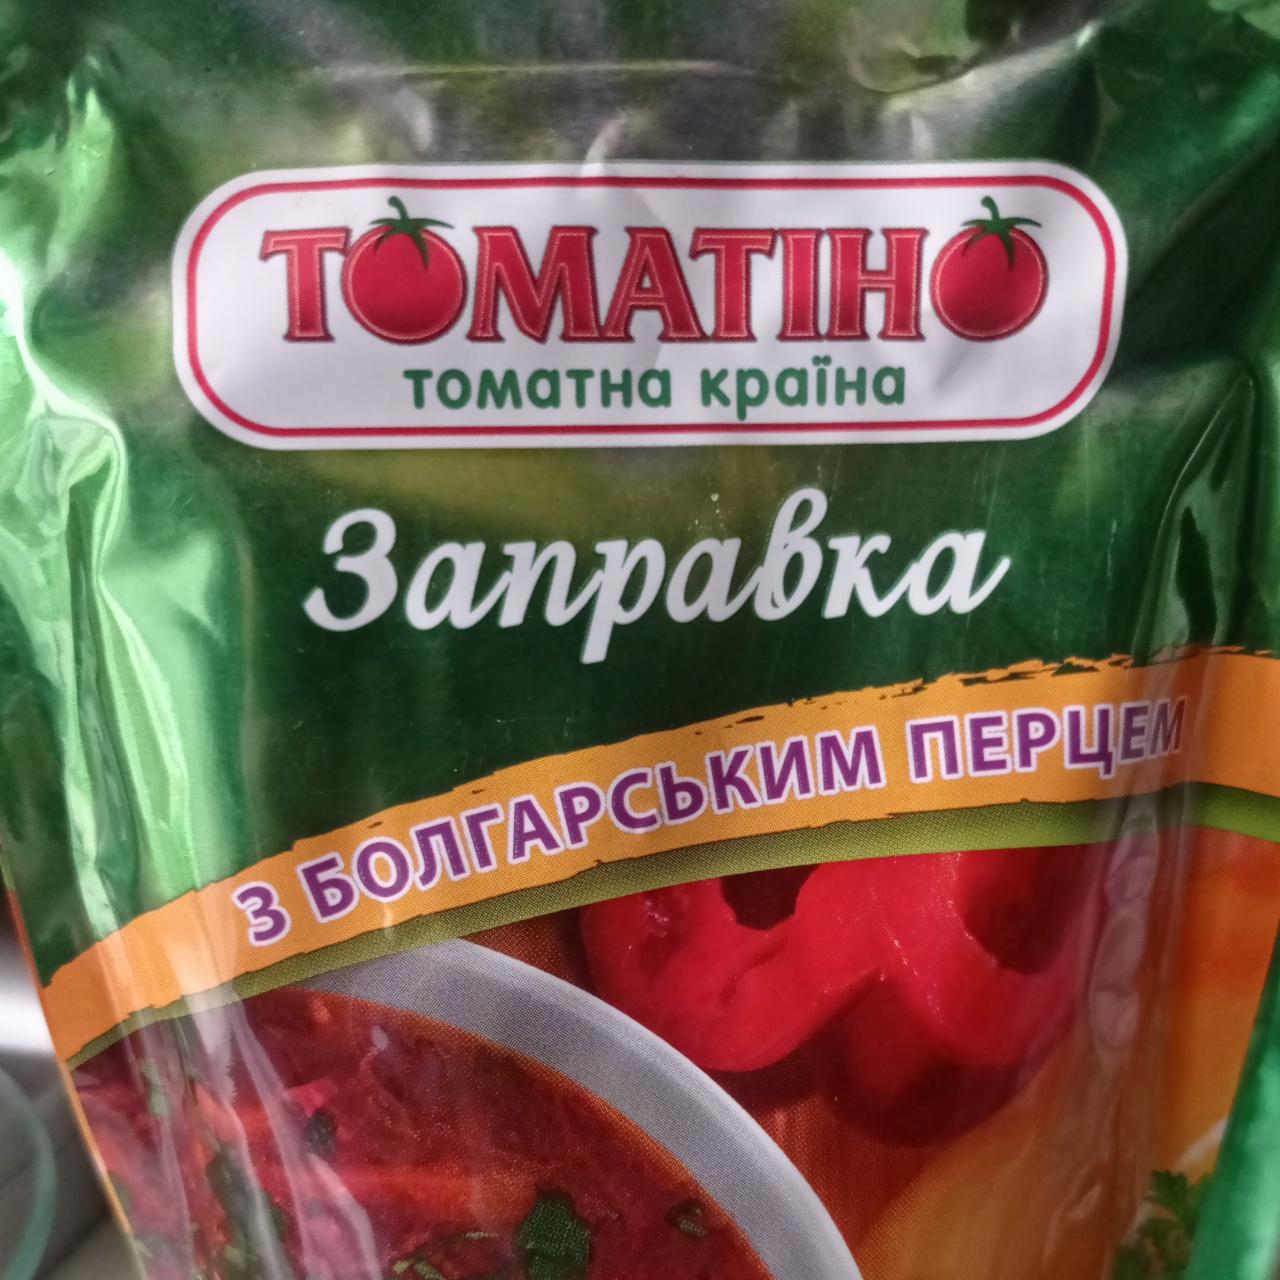 Фото - Заправка томатная с болгарским перцем Торчин